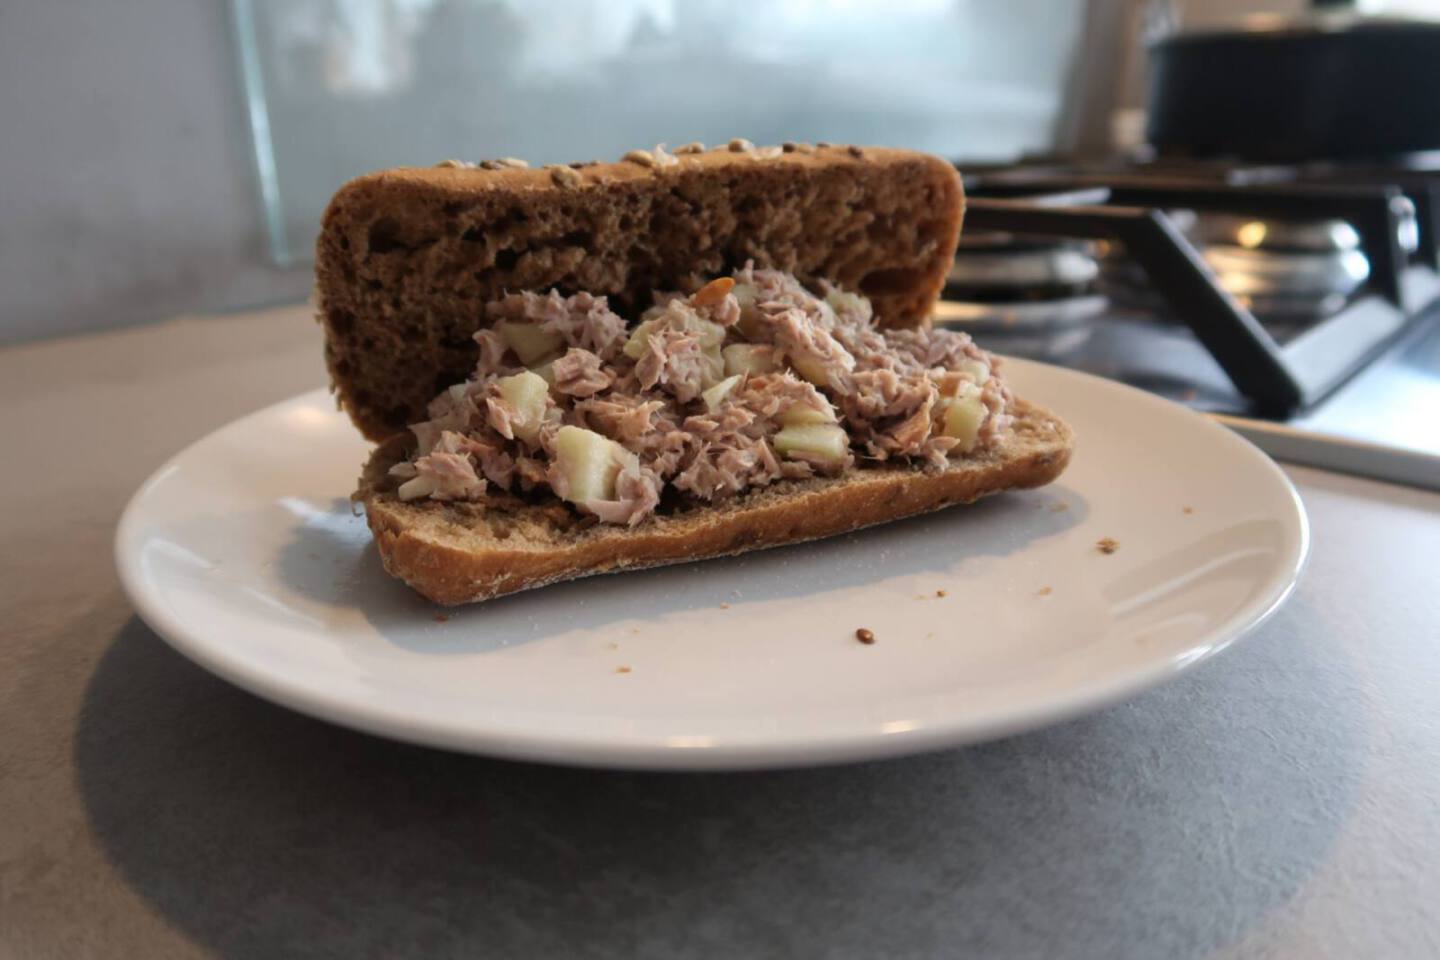 Broodje tonijnsalade